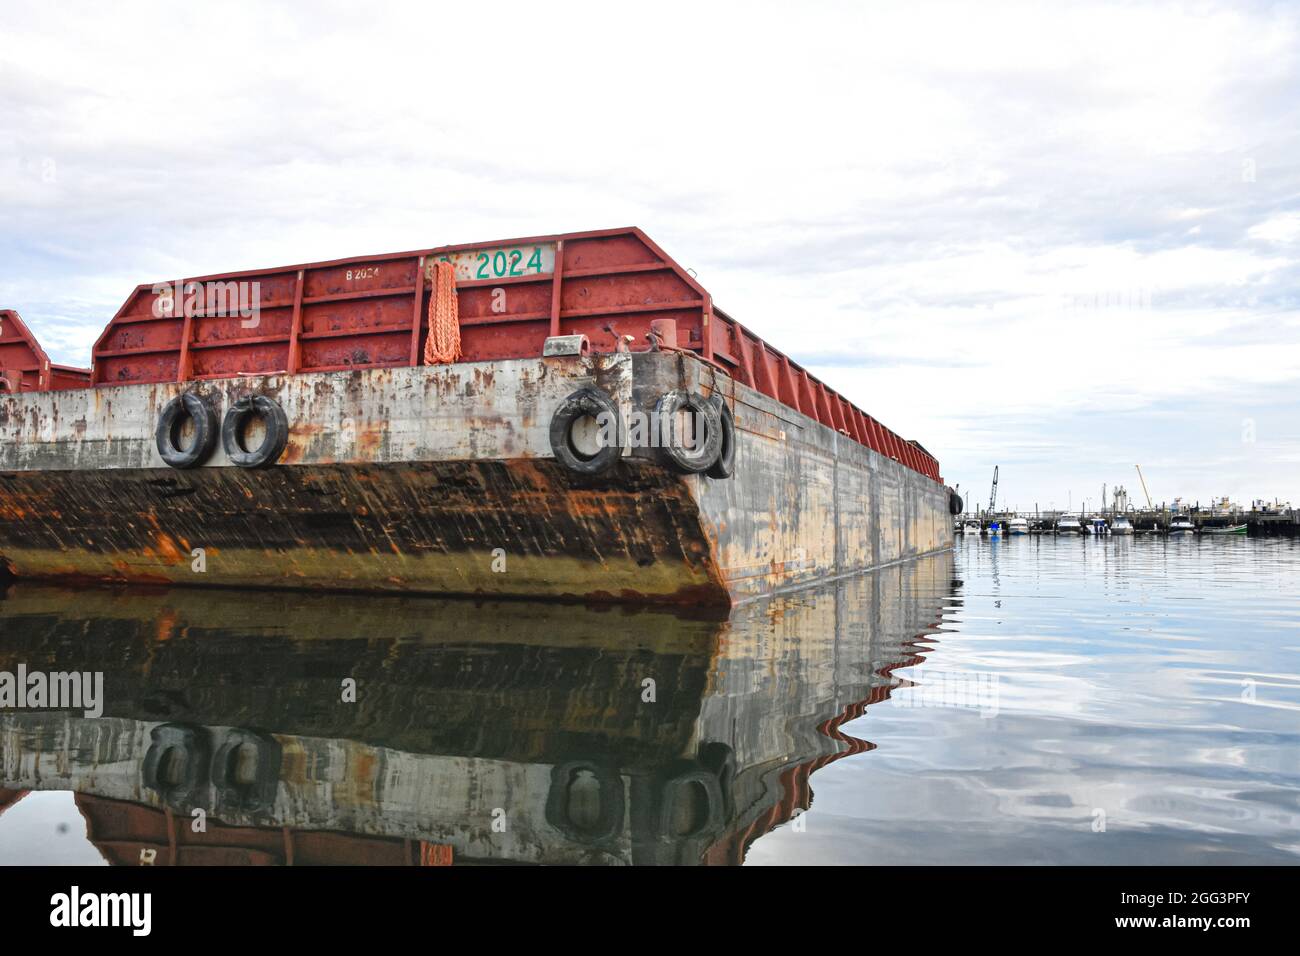 Sand- und Kiesbarge, die an das Dock eines funktionierenden Hafens gebunden sind. Long Island, New York. Speicherplatz kopieren. Stockfoto